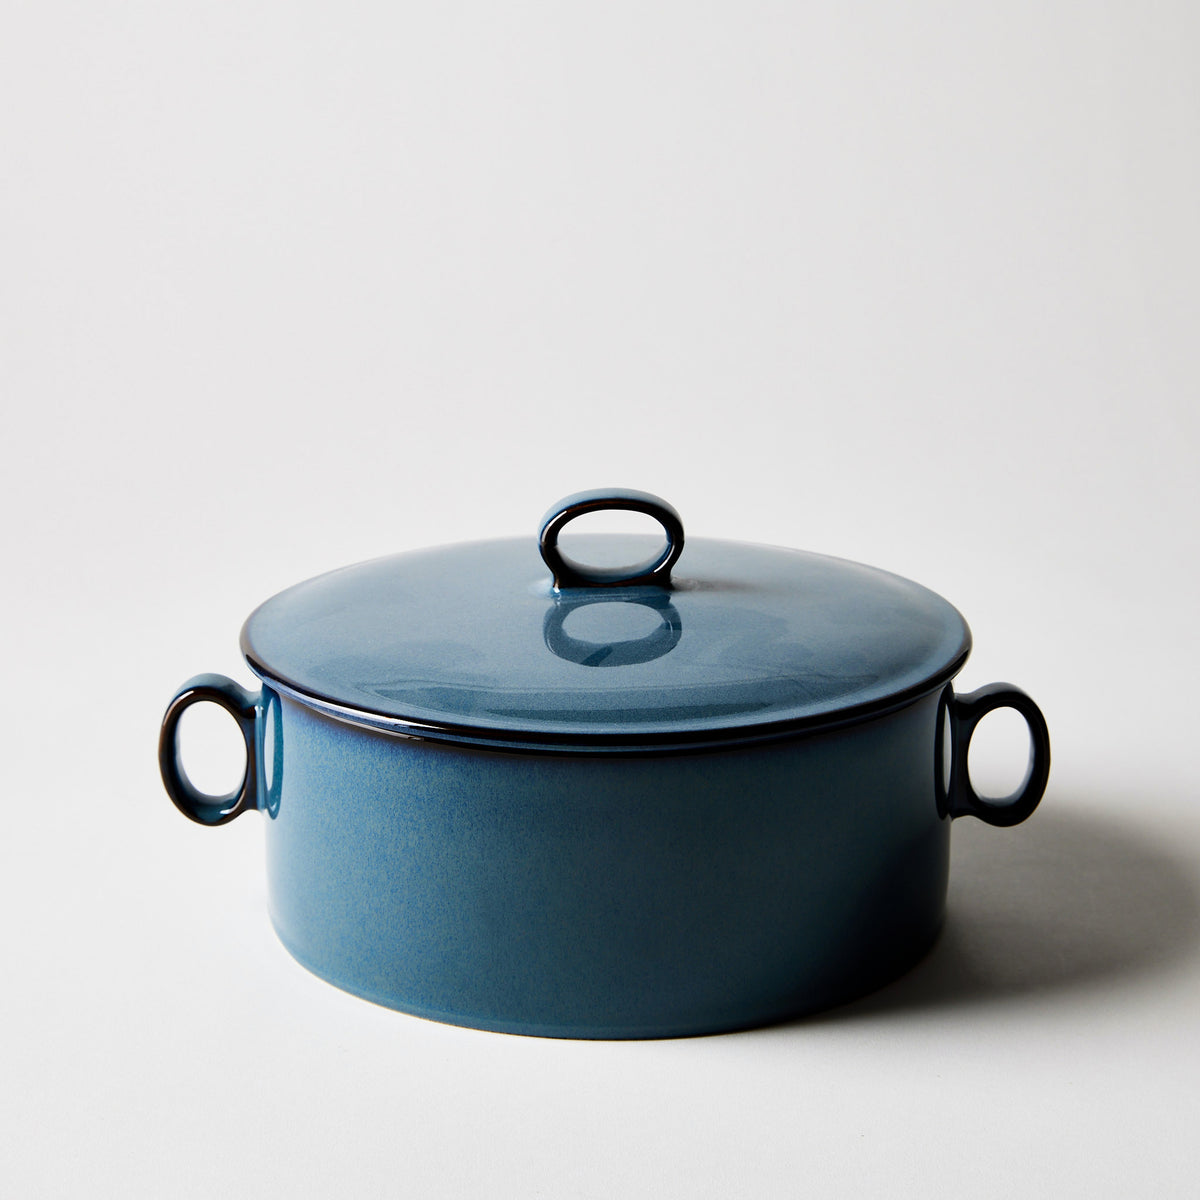 http://www.dansk.com/cdn/shop/products/2022-0303_dansk_generations-ii-dinnerware_nordic-blue-round-casserole-with-lid_silo_ty-mecham_1200x1200.jpg?v=1650650484